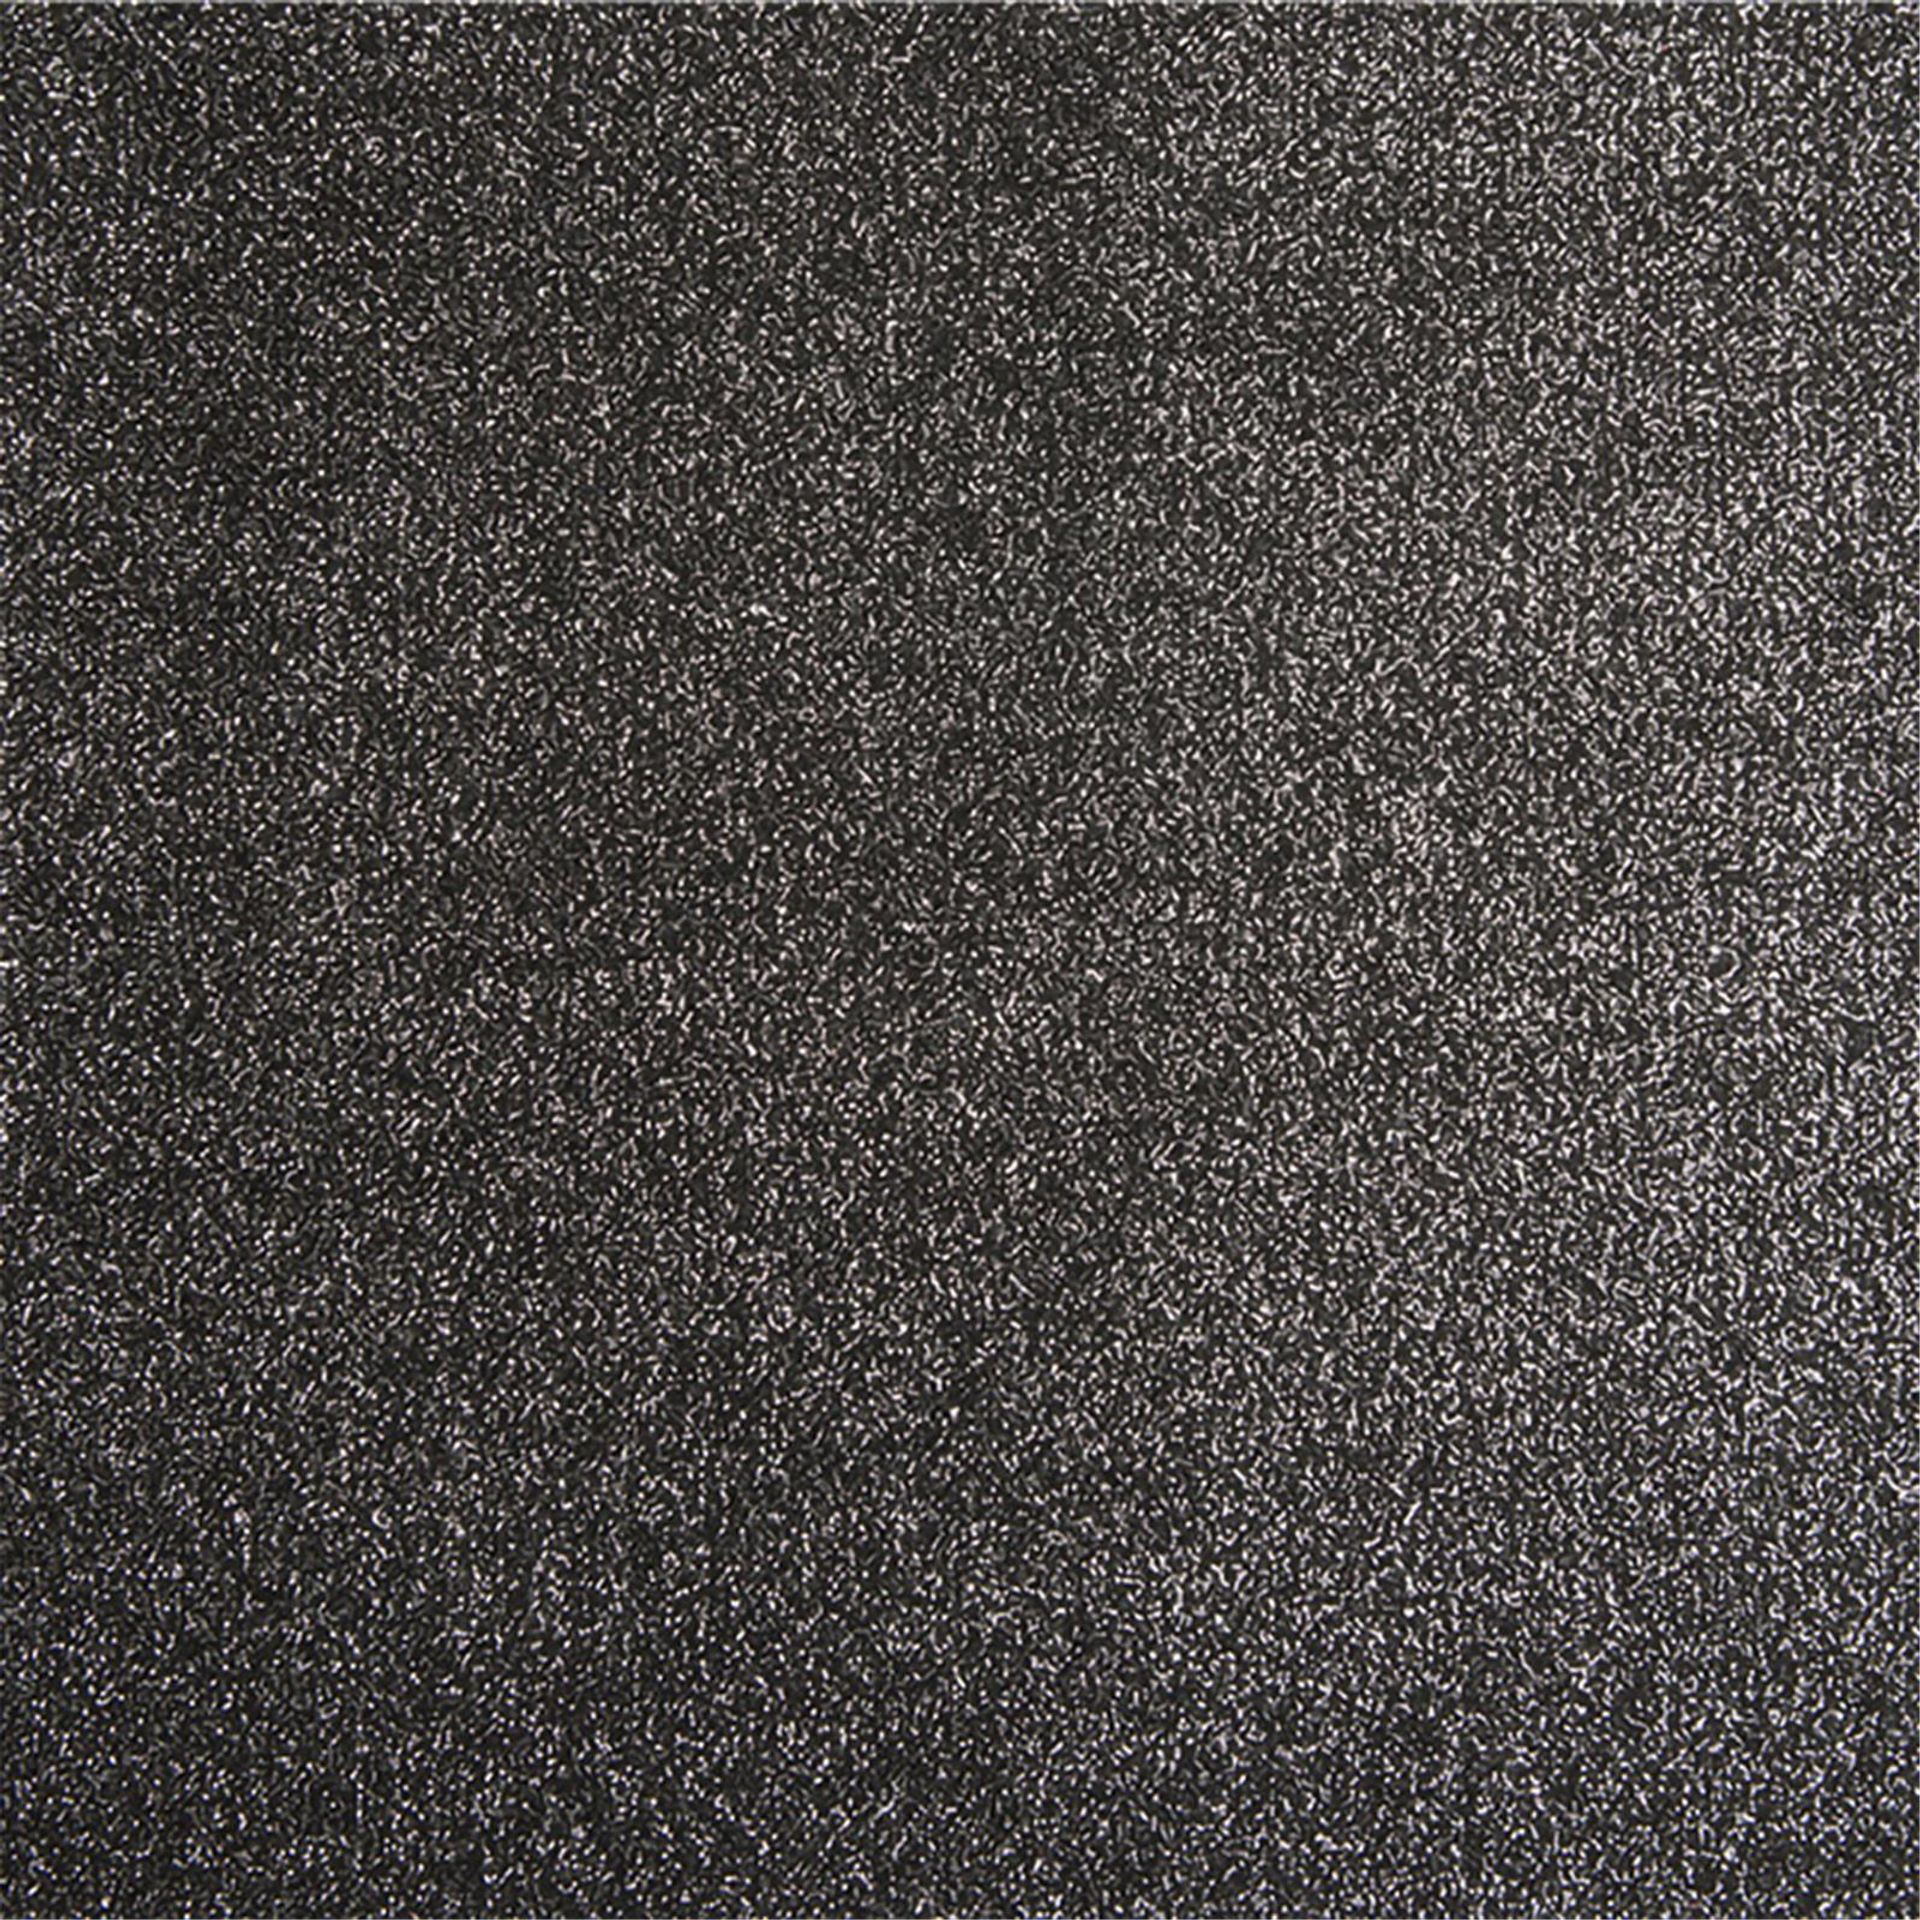 Messeboden Flacher-Nadelvlies-mit-Pailetten EXPOGLITTER Black & Silver 0910 ohne Schutzfolie - Rollenbreite 200 cm